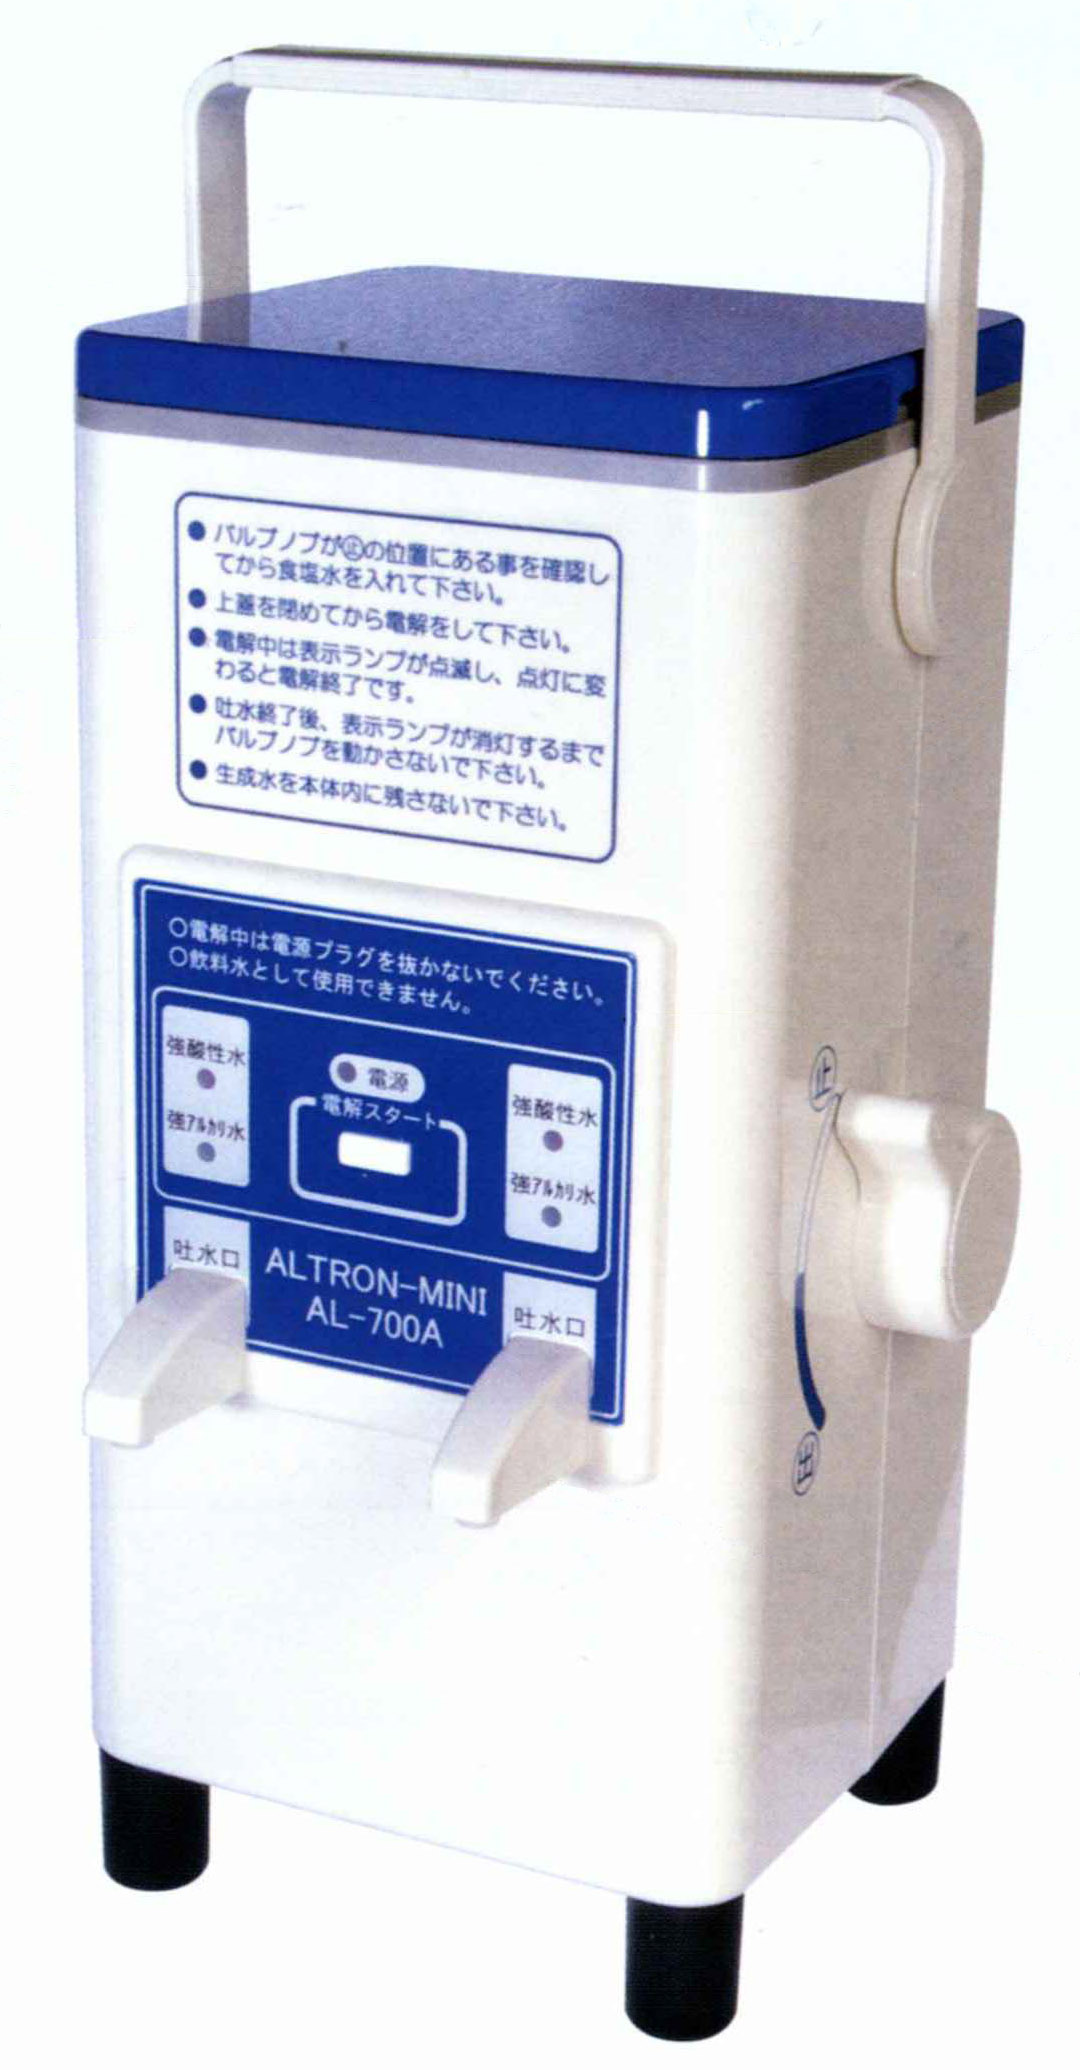 強酸性次亜塩素酸水と強アルカリ水を生成する装置です。安心の日本製